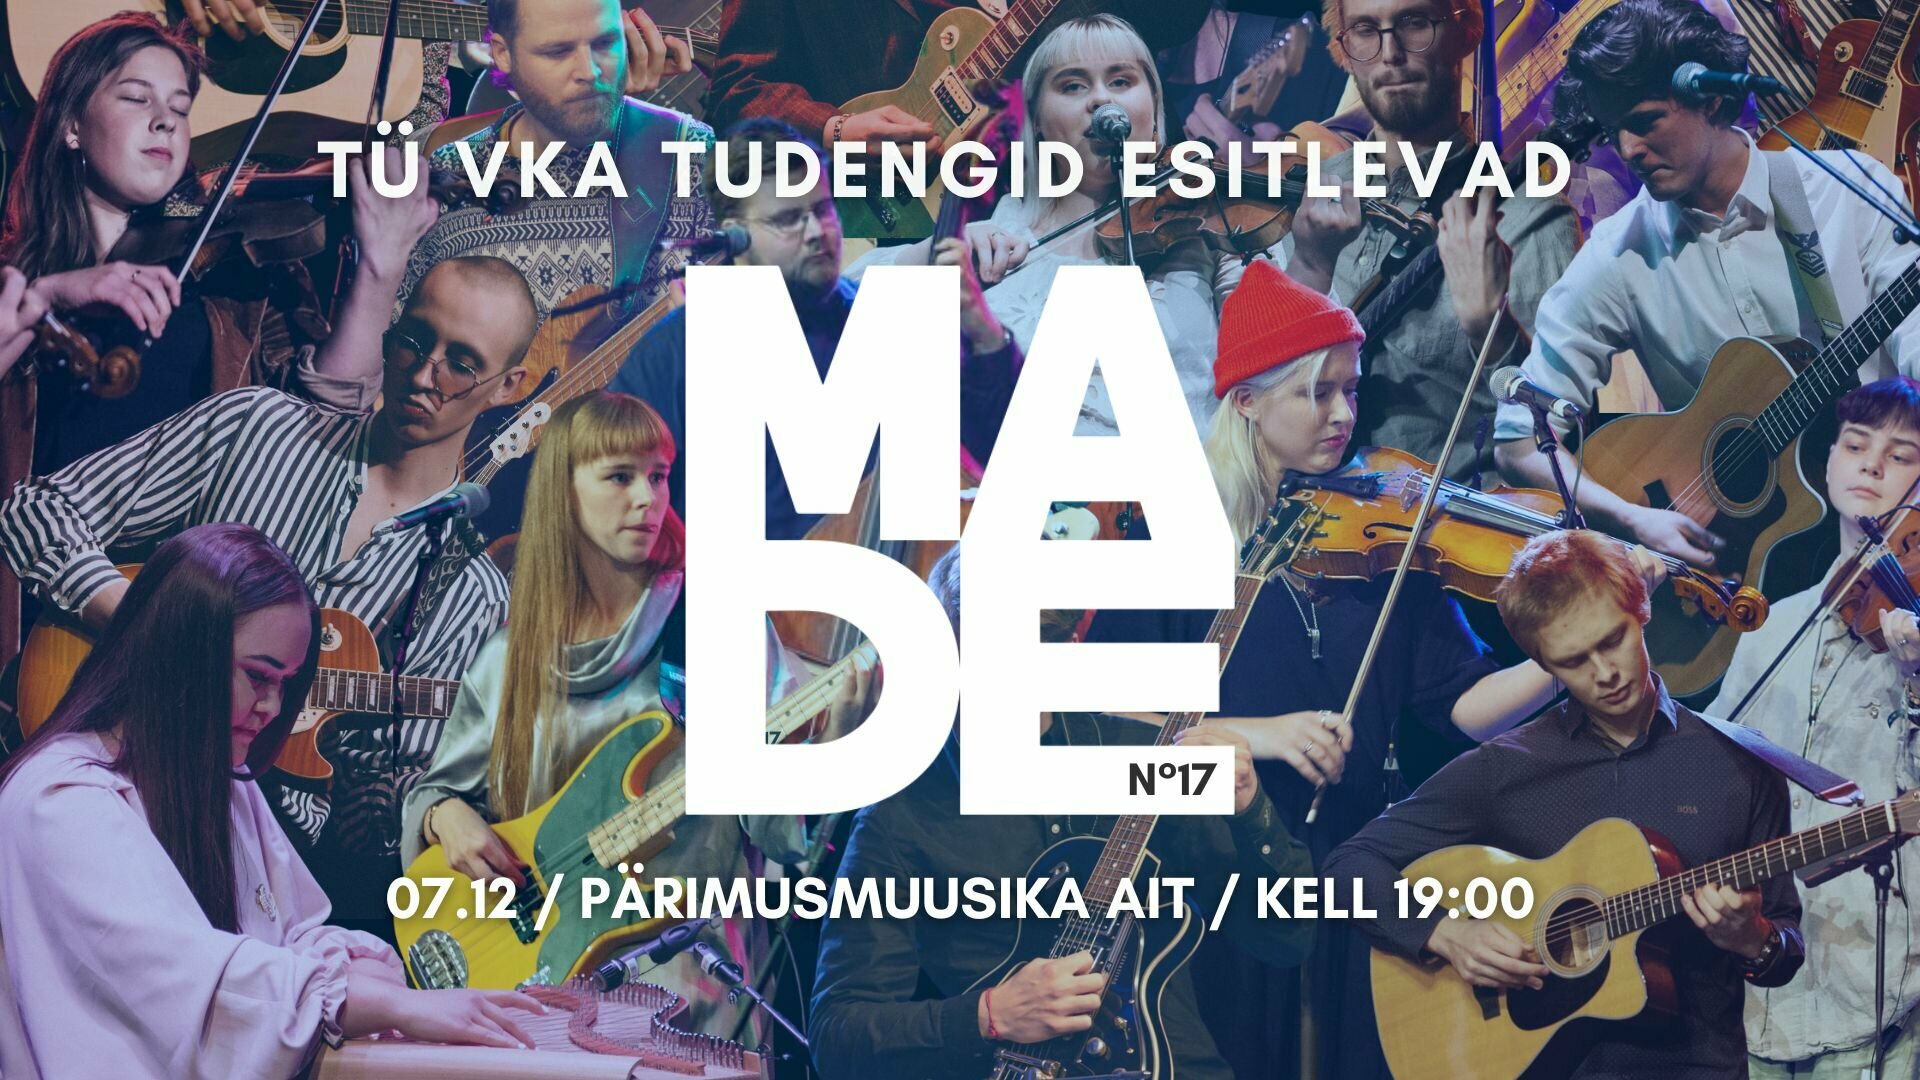 Made No.17 - Tartu Ülikooli Viljandi kultuuriakadeemia